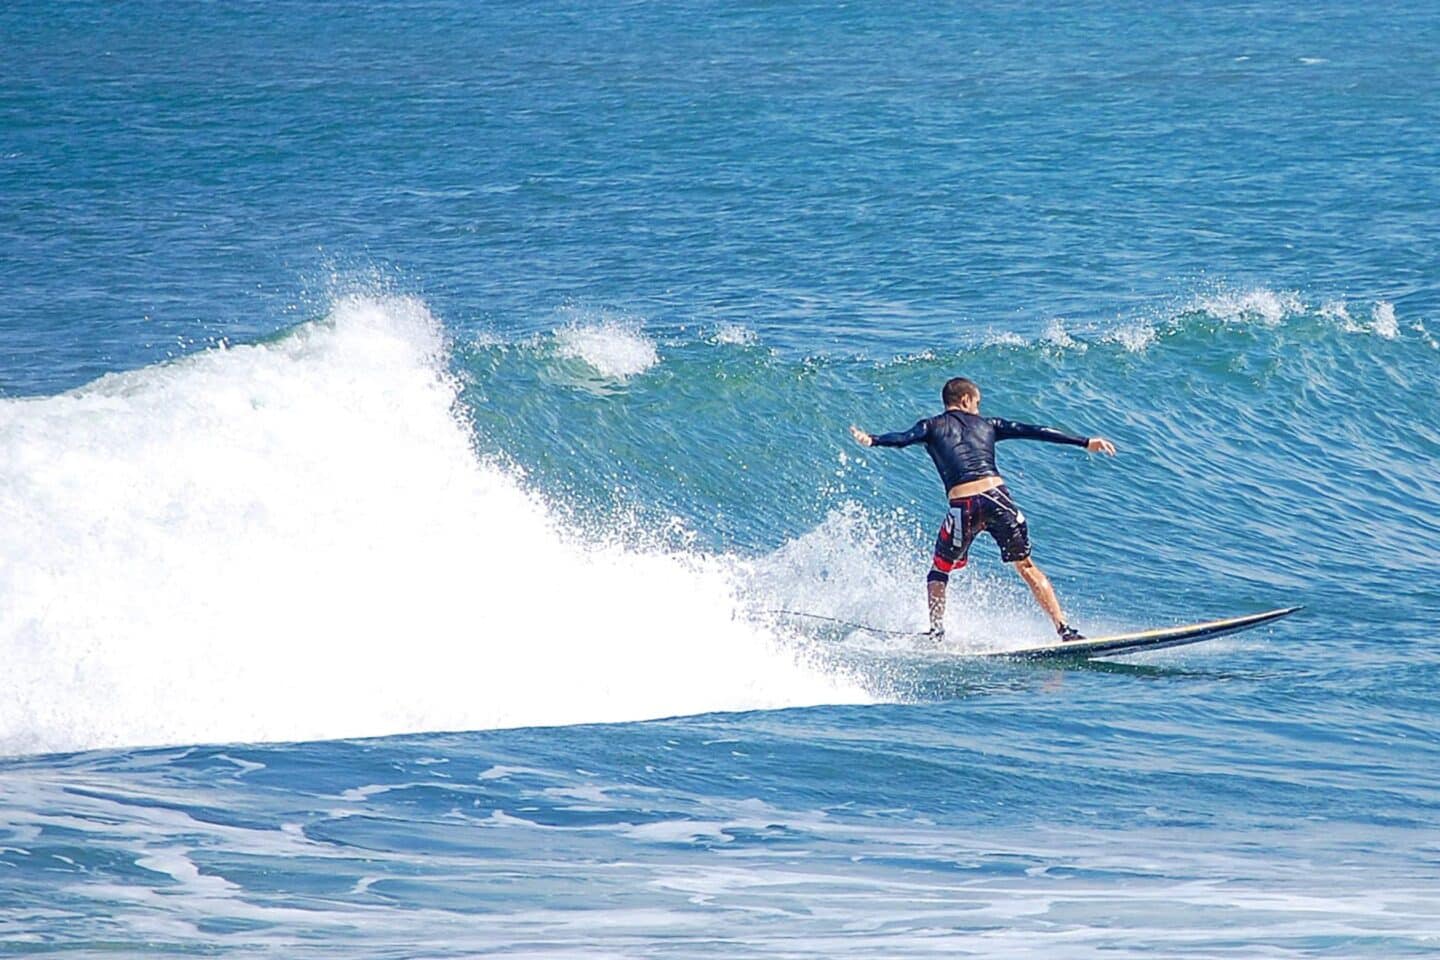 Tom surfing in Medewi